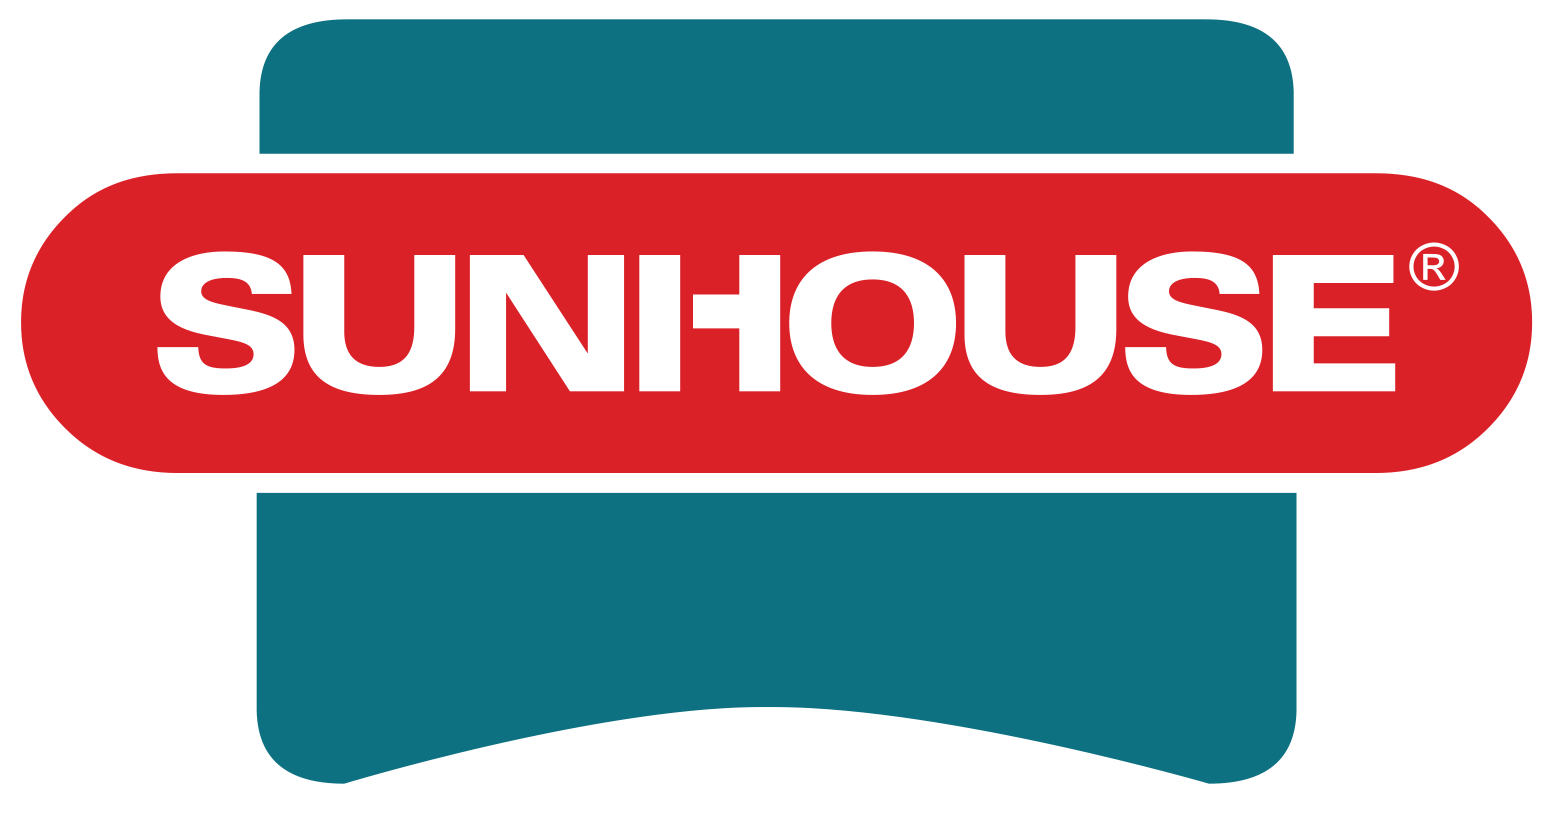 logo sunhouse